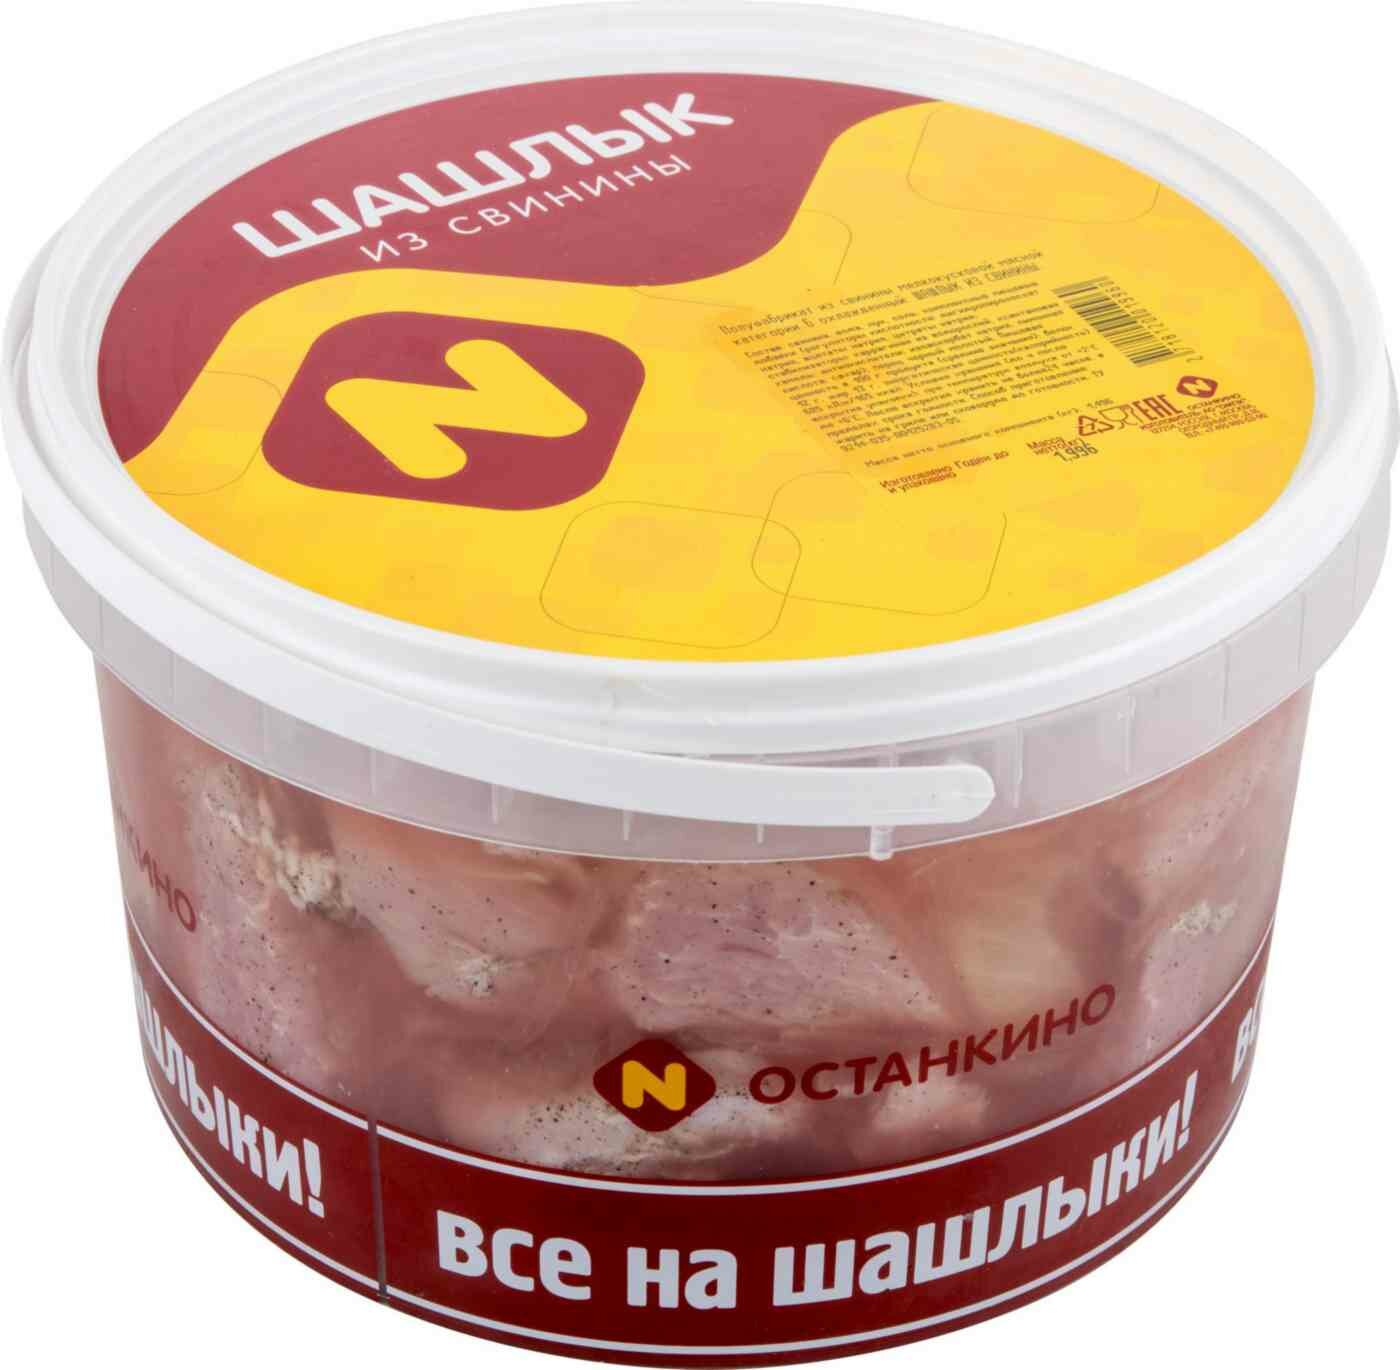 Шашлык Останкино из свинины охлаждённый вес, 2 кг